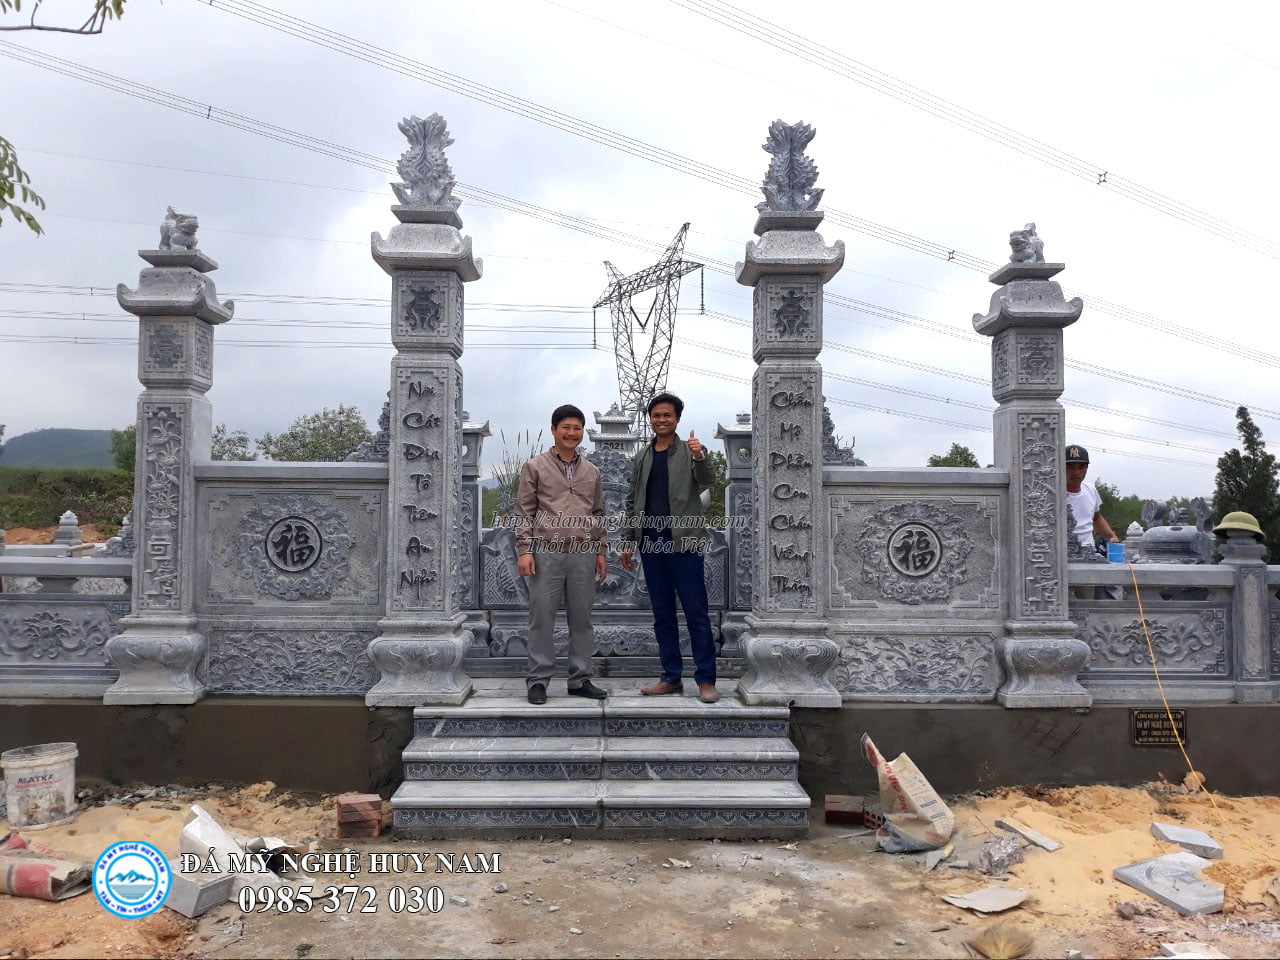 Chụp ảnh lưu niệm tại khu lăng mộ đá với khách hàng tại Quảng Bình